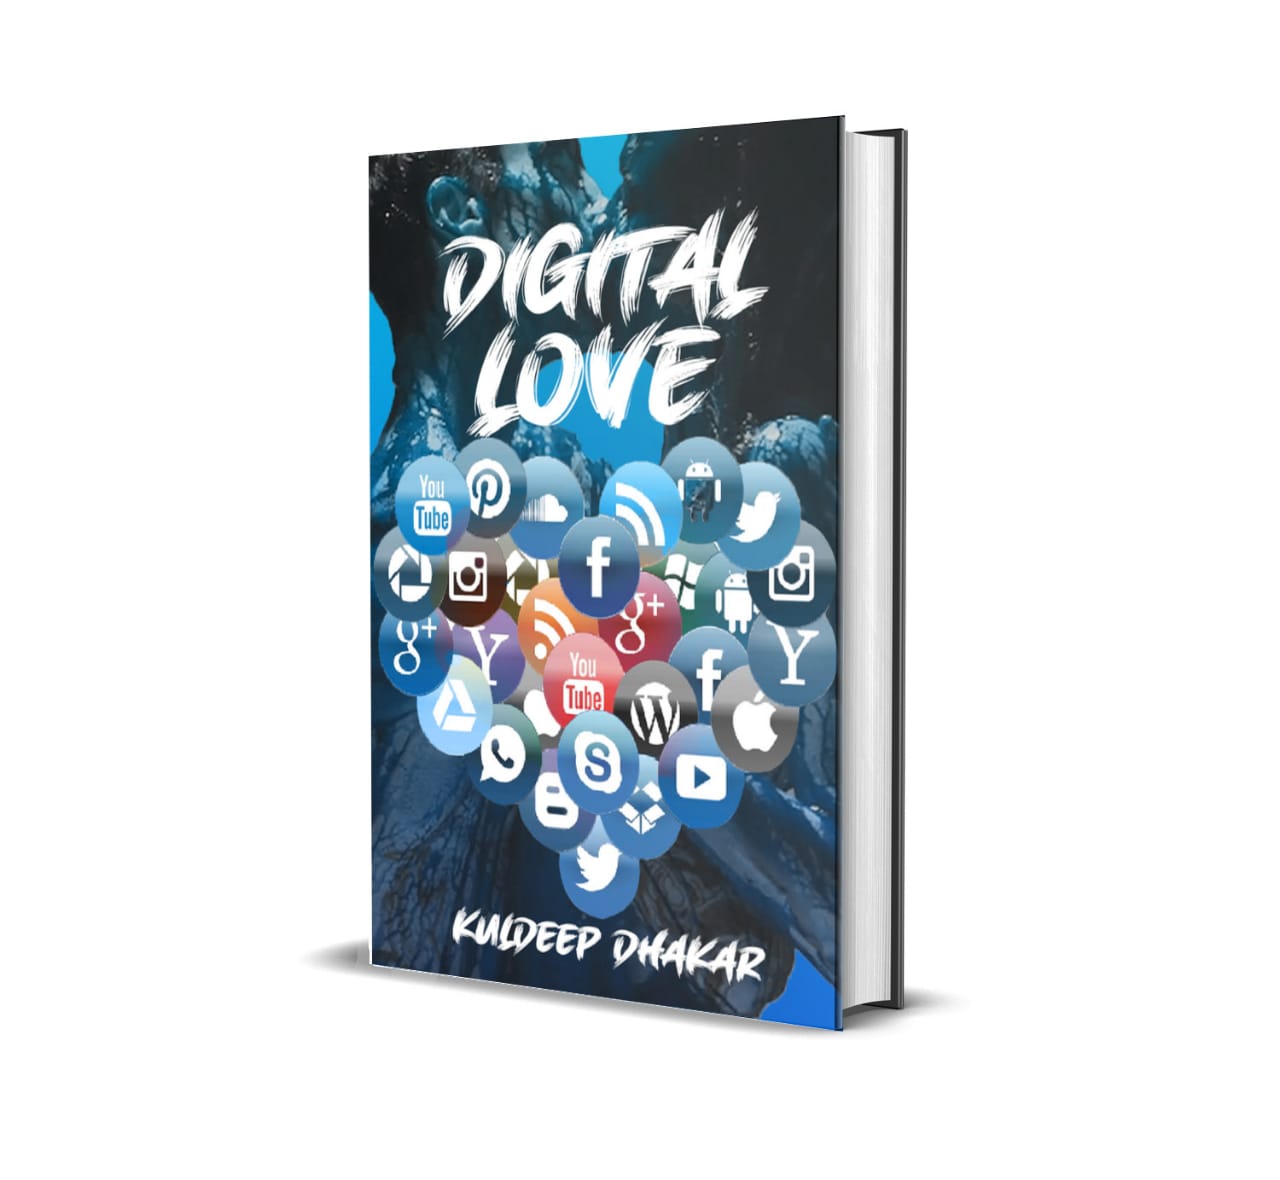 सोशल मीडिया वाली प्रेम कहानी पर आधारित है धाकड़ की पुस्तक डिजिटल लव